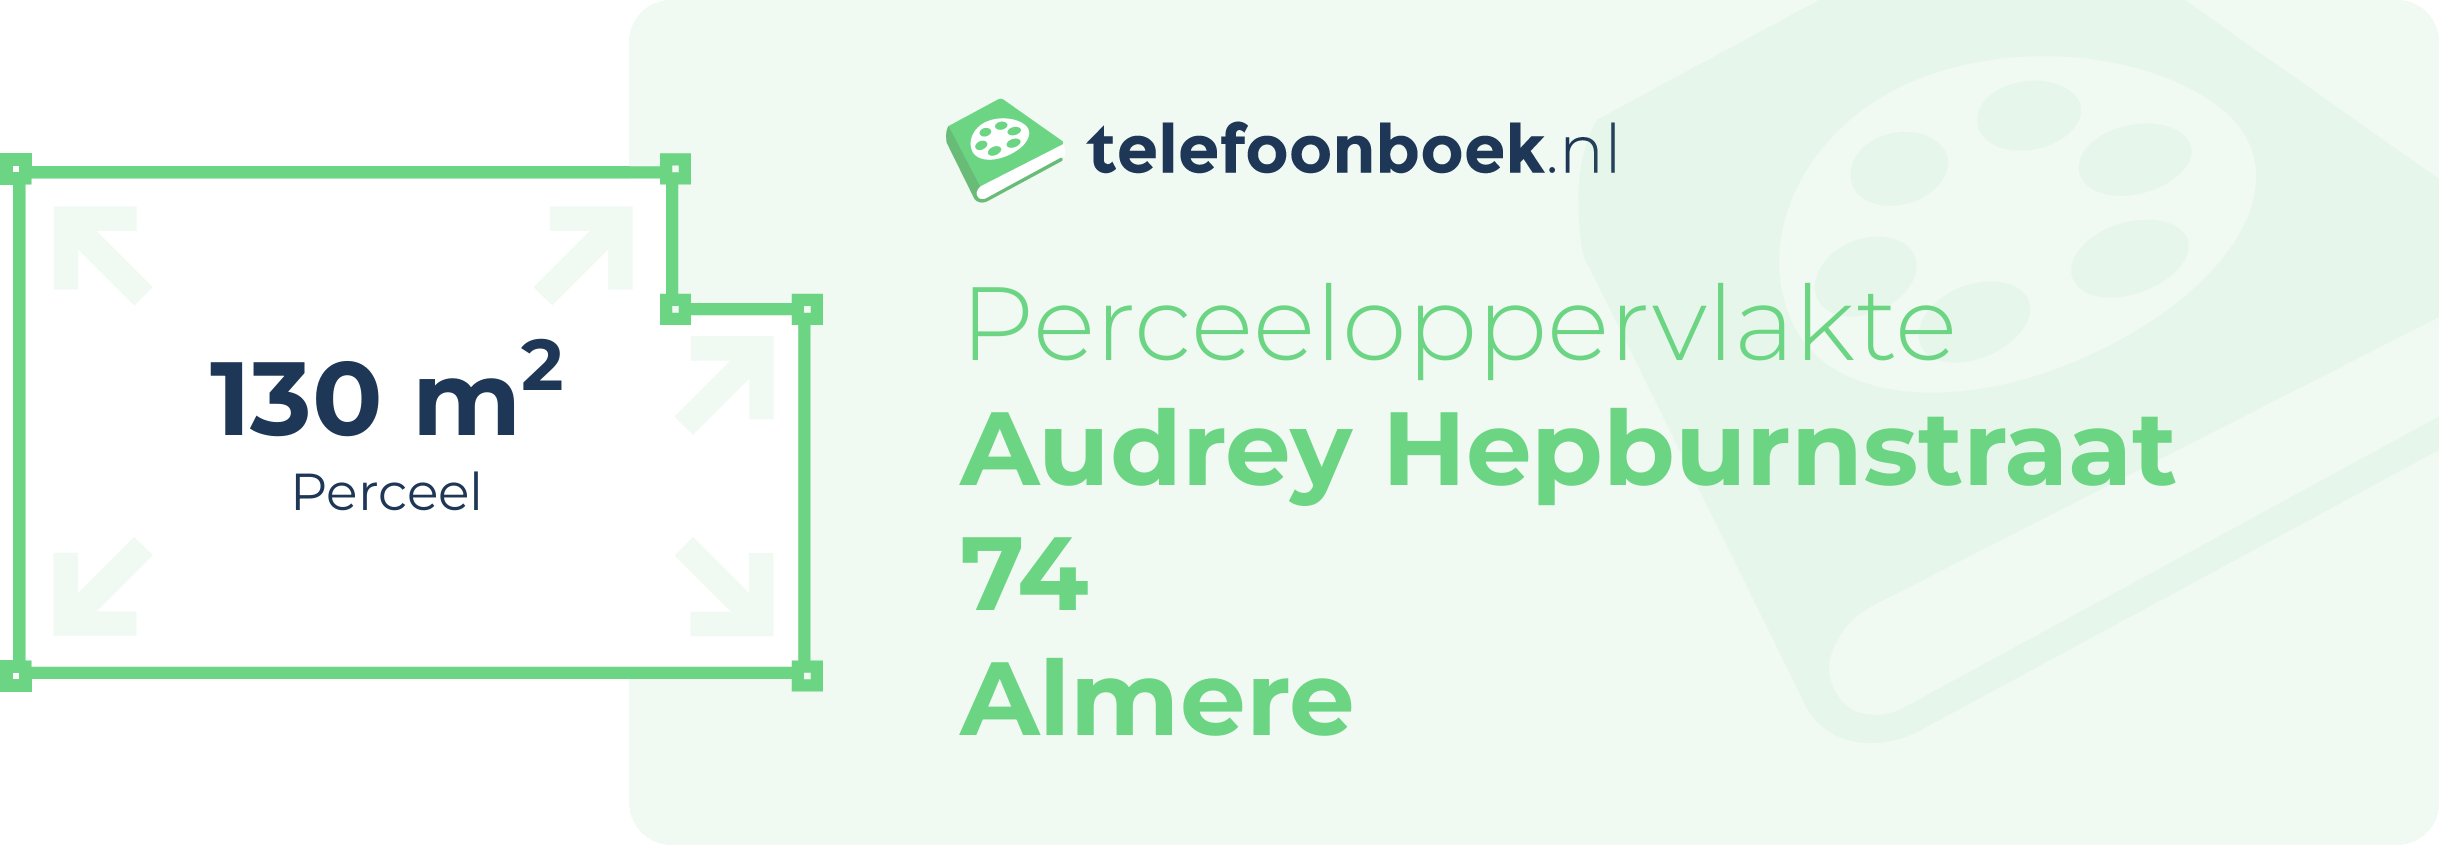 Perceeloppervlakte Audrey Hepburnstraat 74 Almere